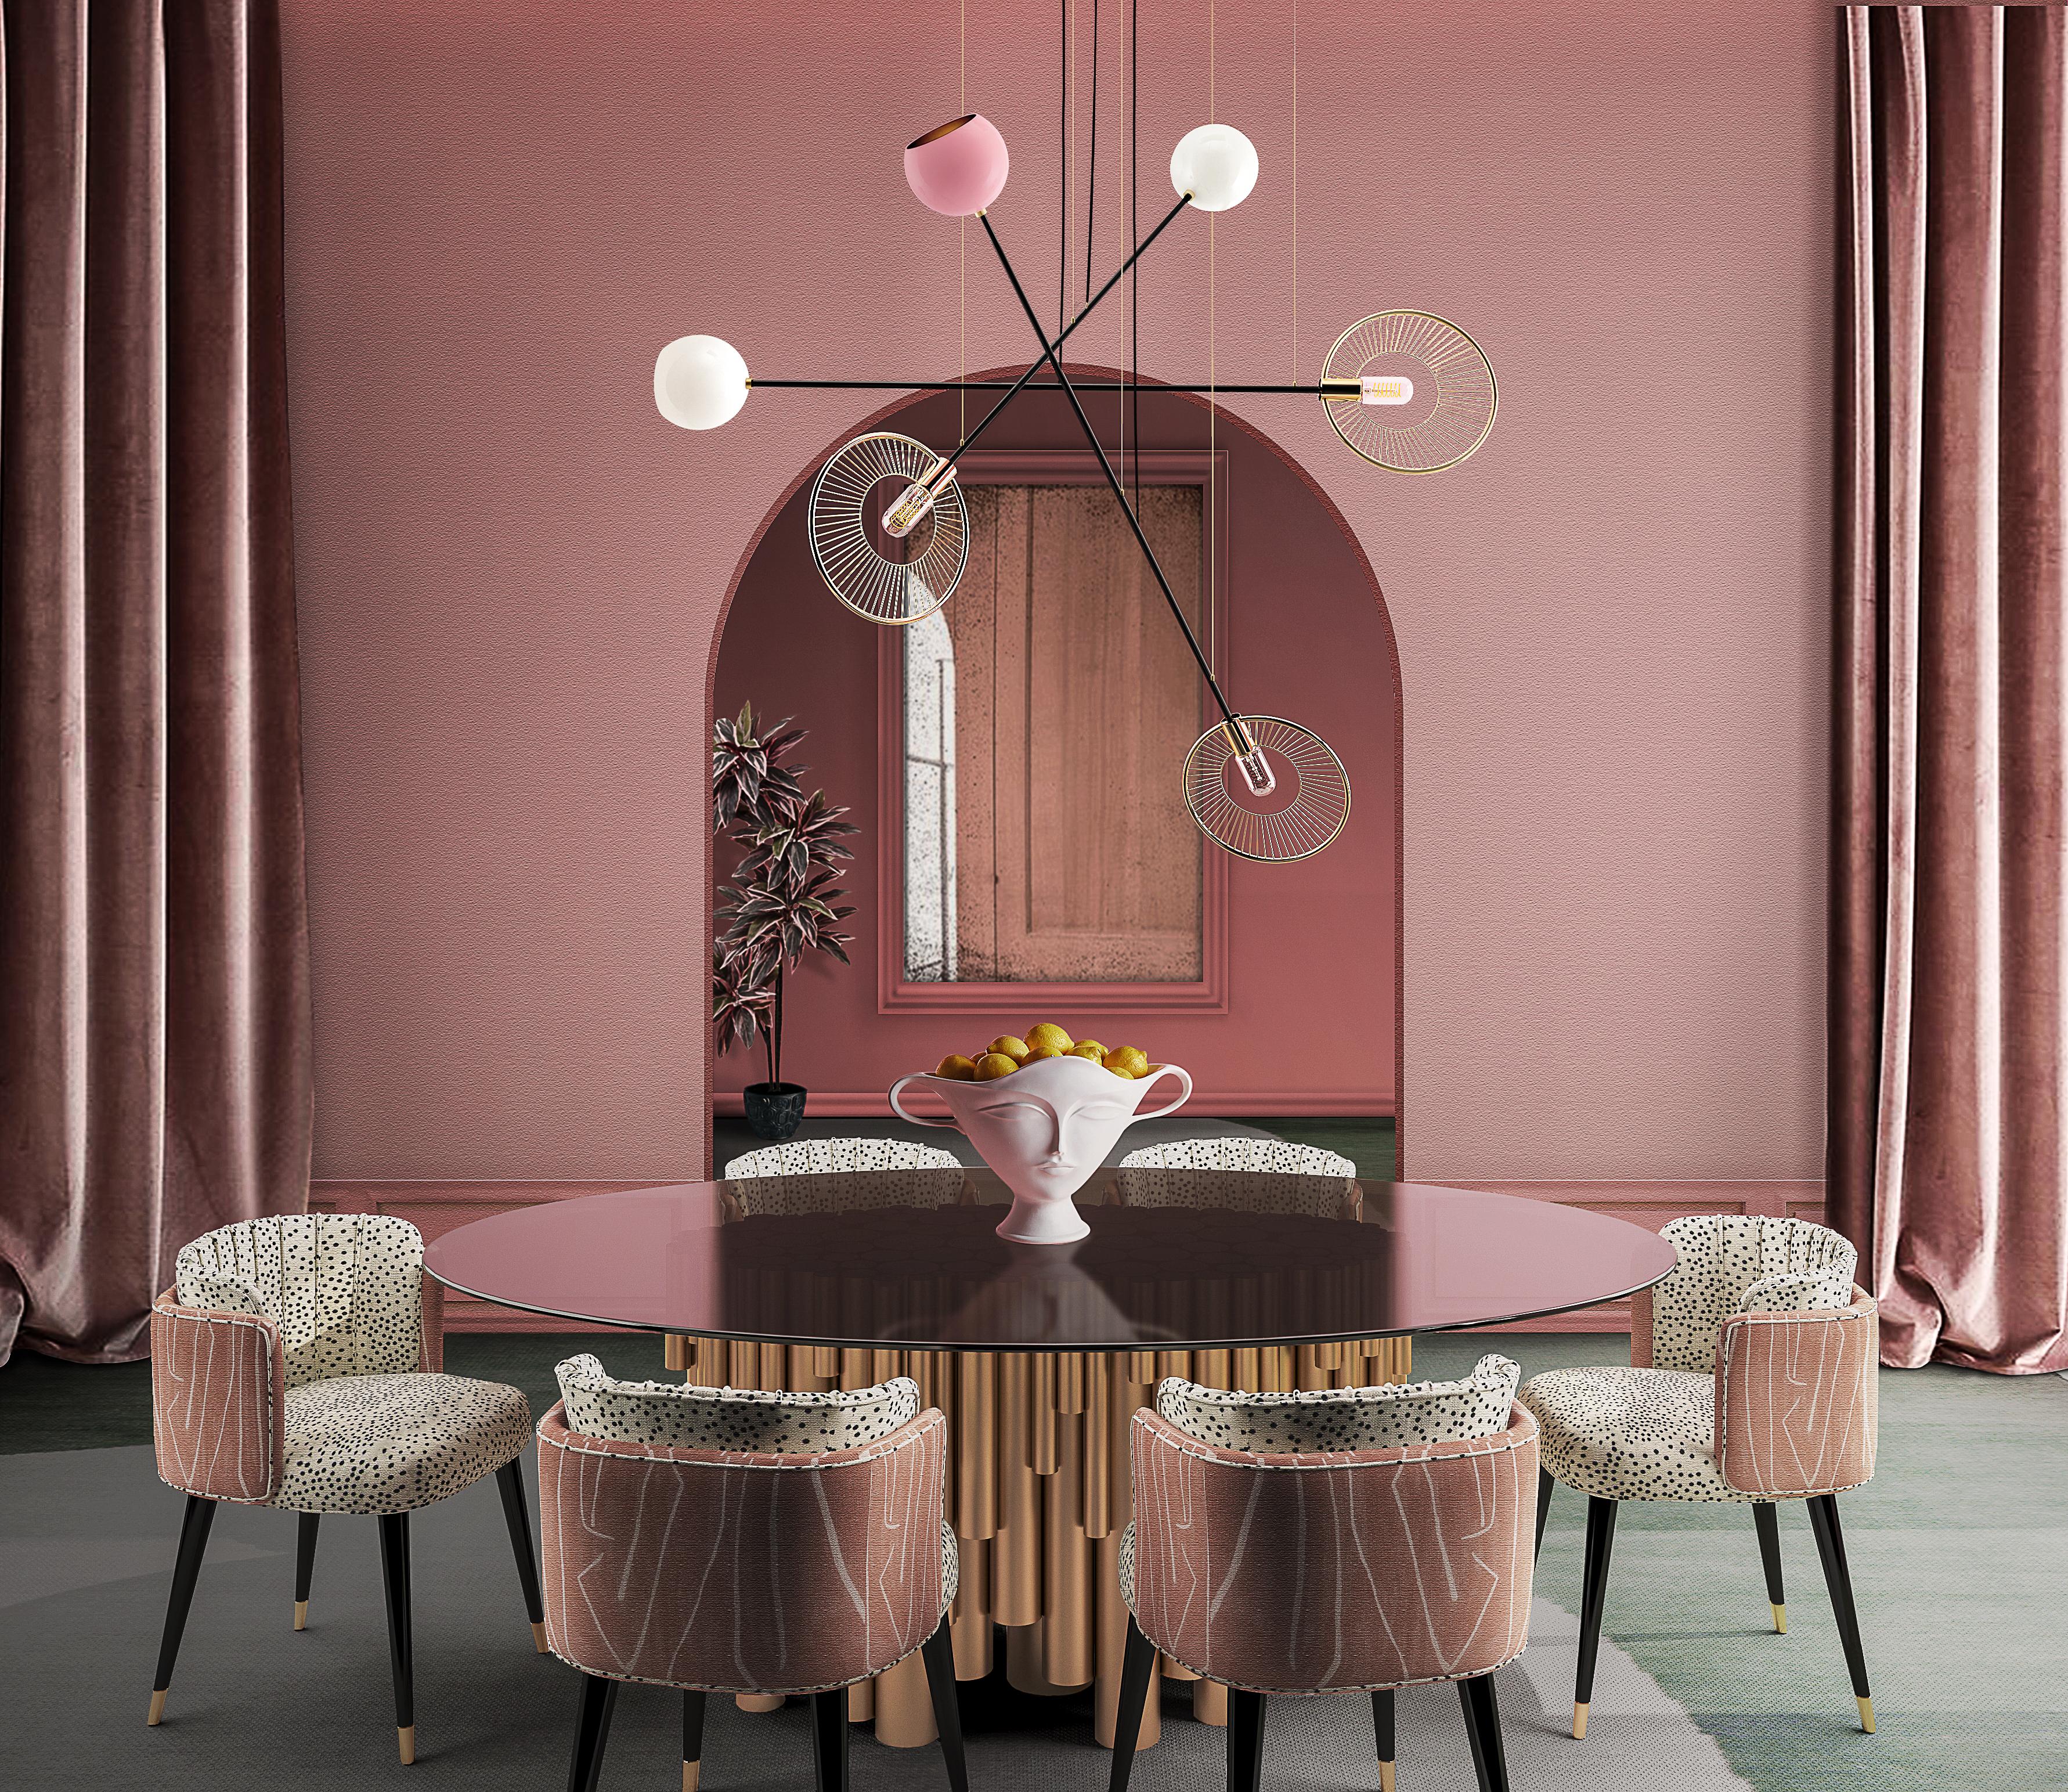 
La chaise de salle à manger Anita, de style moderne du milieu du siècle, est une pièce où la luxuriance, la beauté et la délicatesse cachent la férocité et la sensualité débridée de l'une des personnalités emblématiques des années 50 : Anita